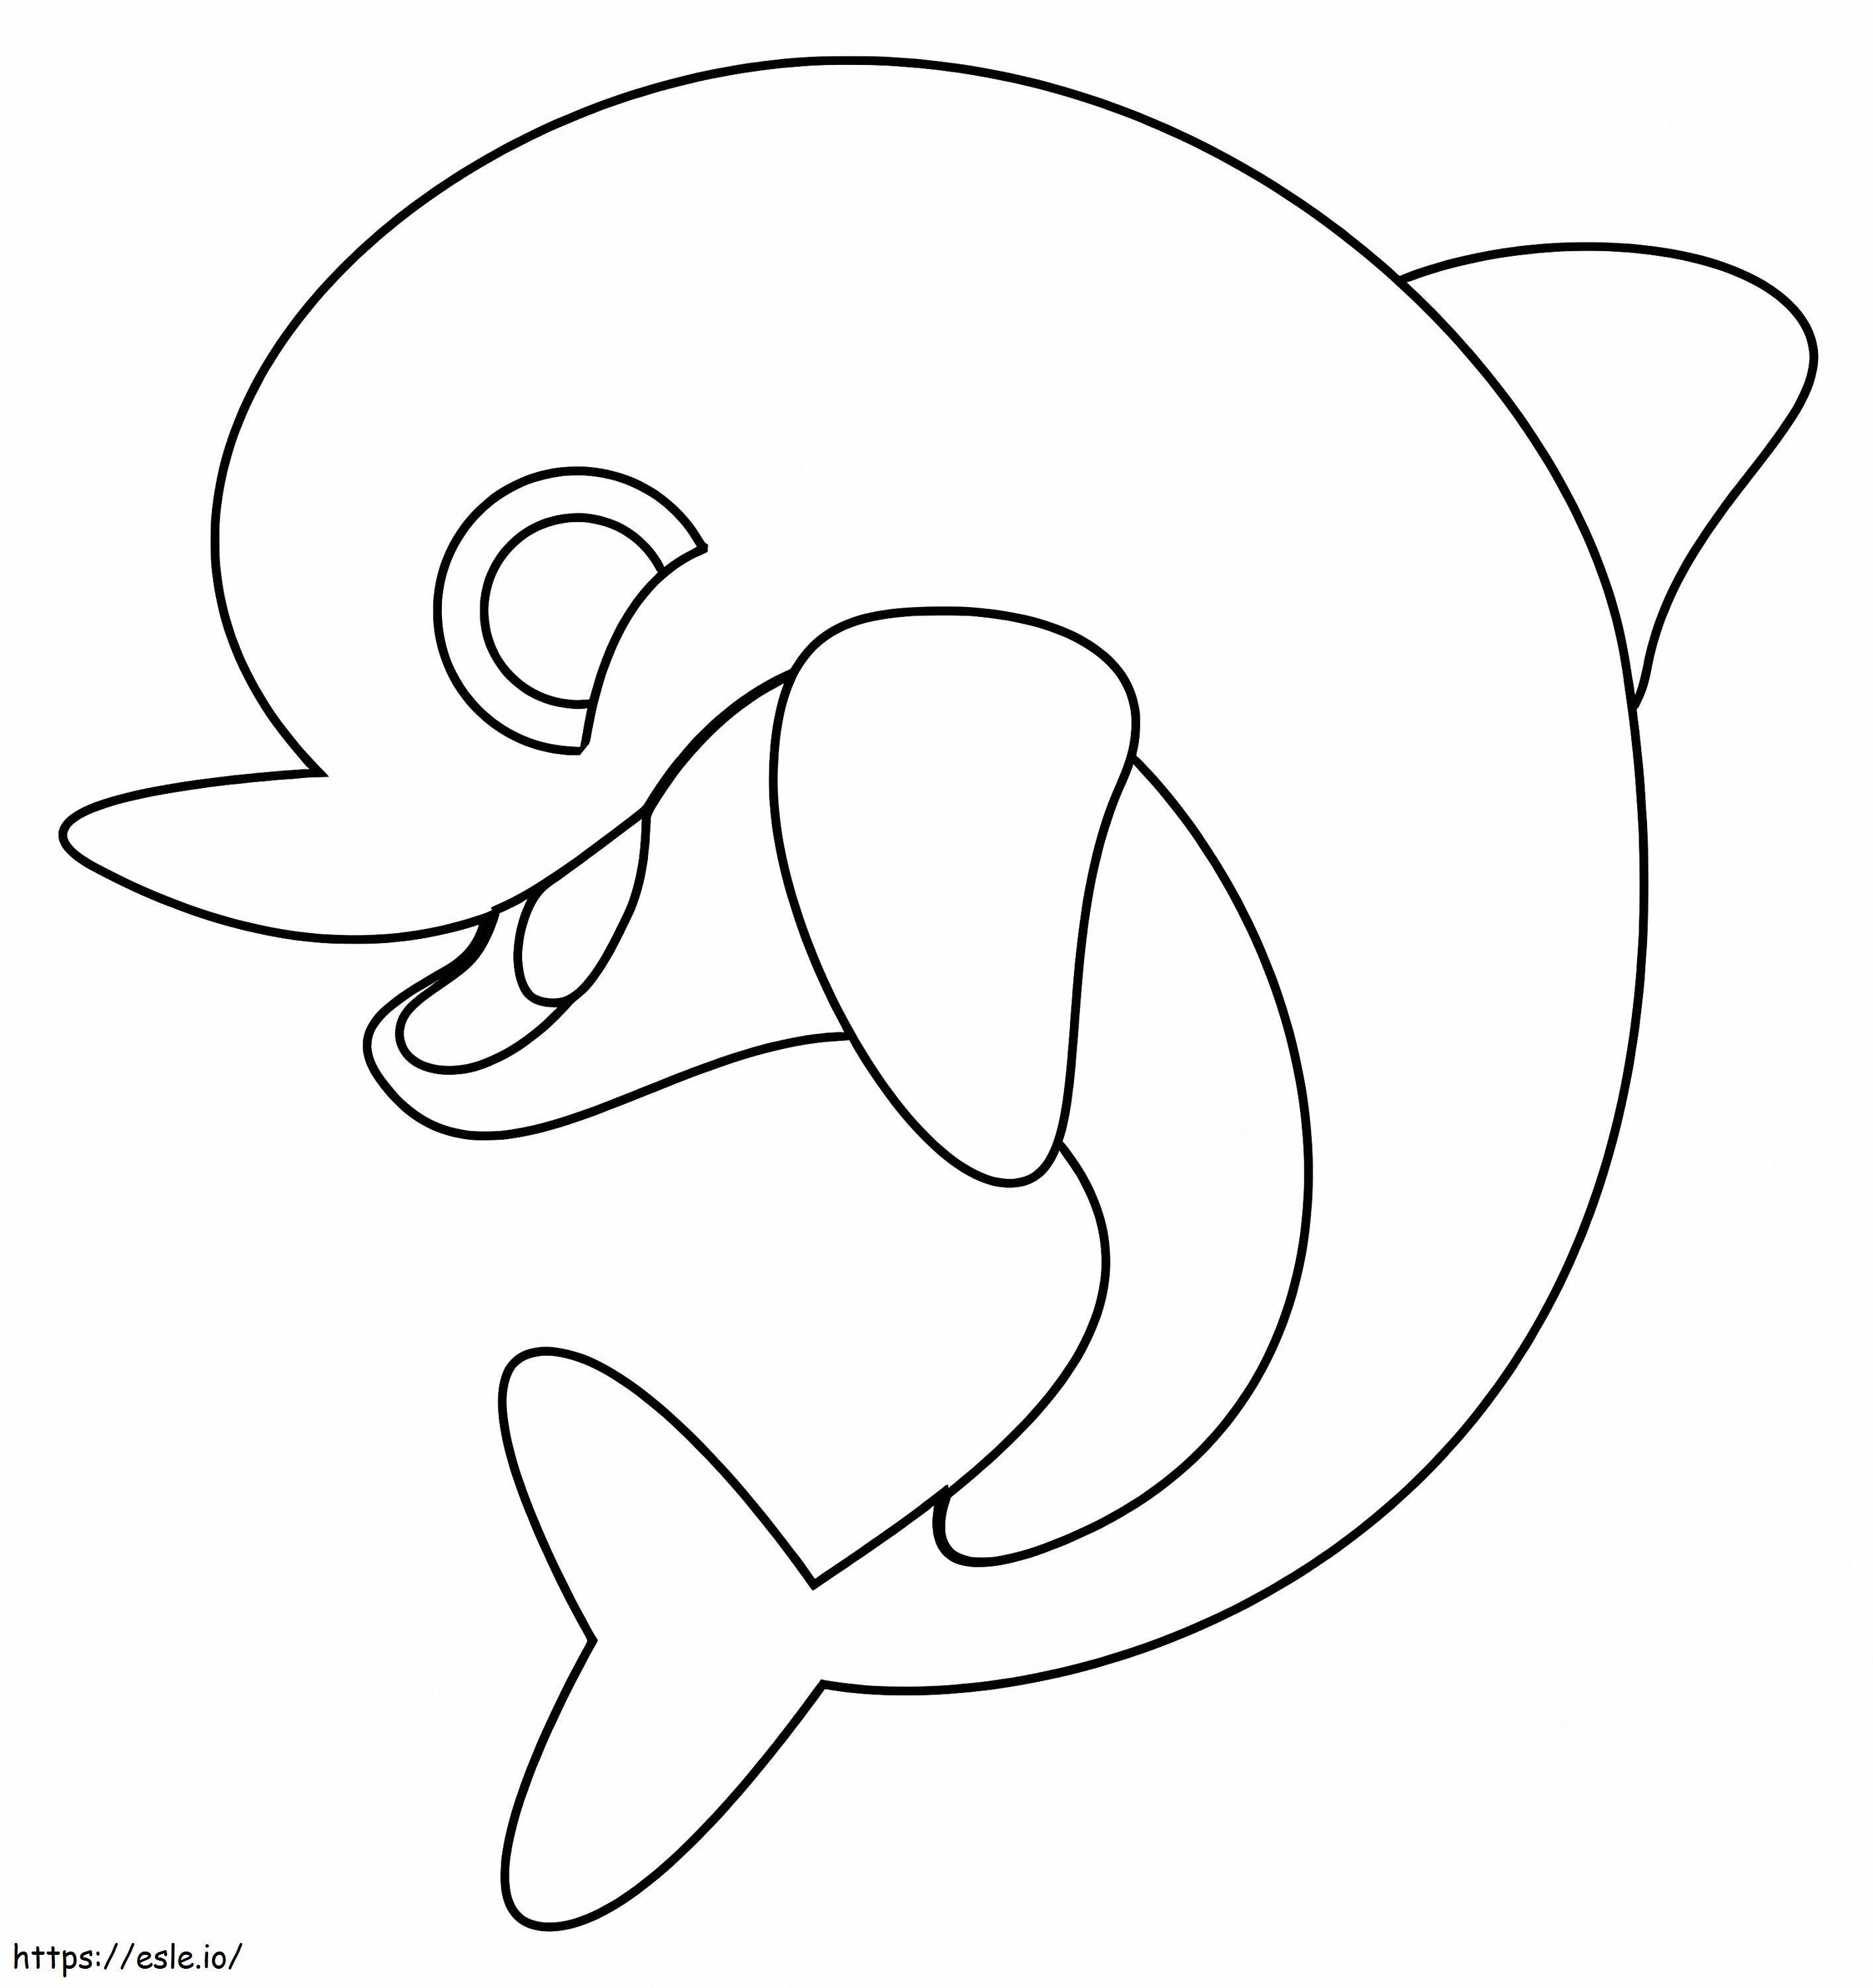 Niedlicher Babydelfin ausmalbilder